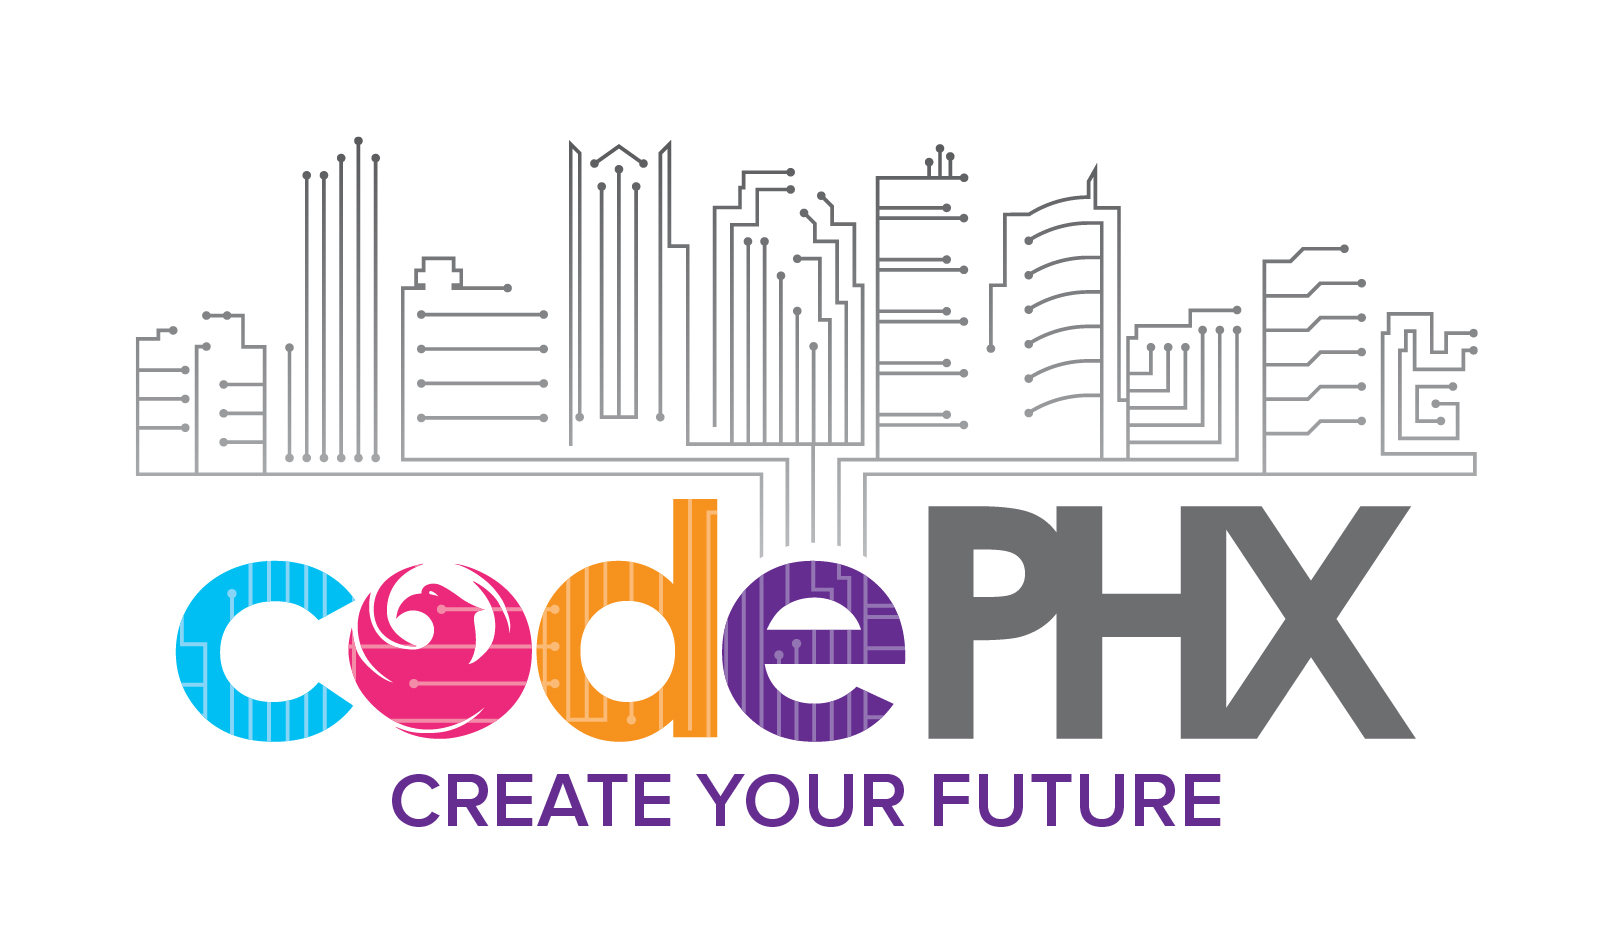 codePHX program logo with tagline